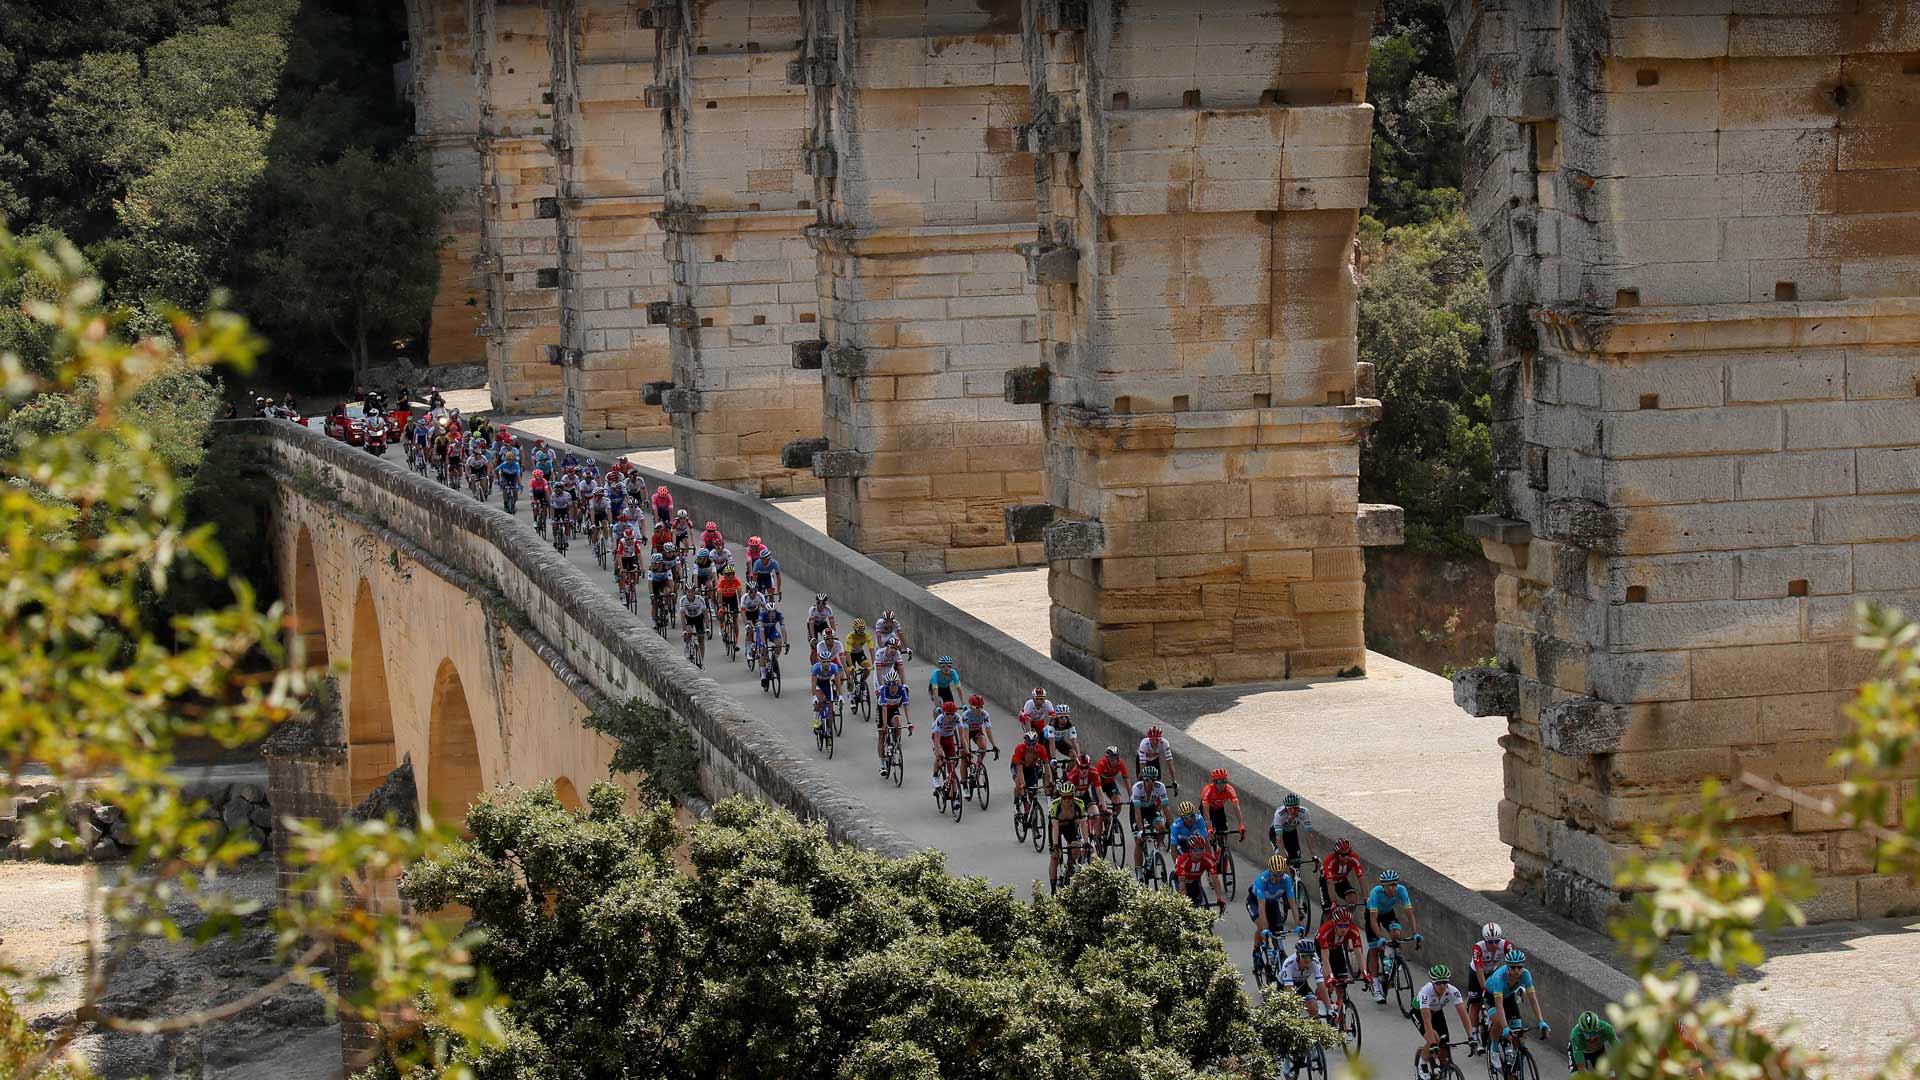 Tour de France cyclists crossing the Pont du Gard